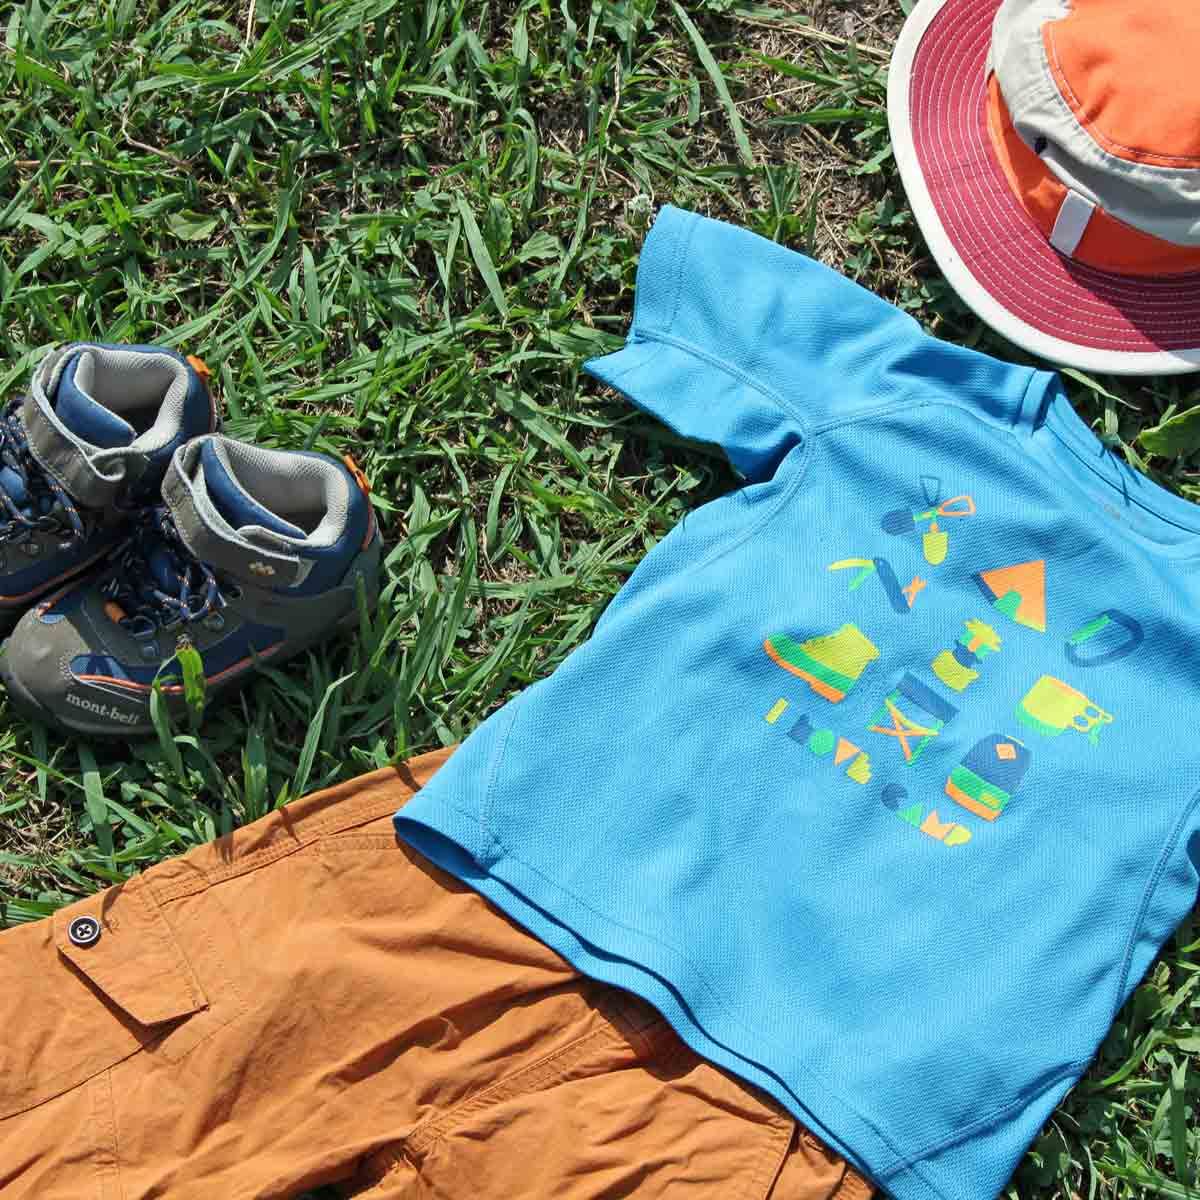 キャンプやハイキングなどで快適に遊ぶための子どもの服装 教えます 価格 Comマガジン